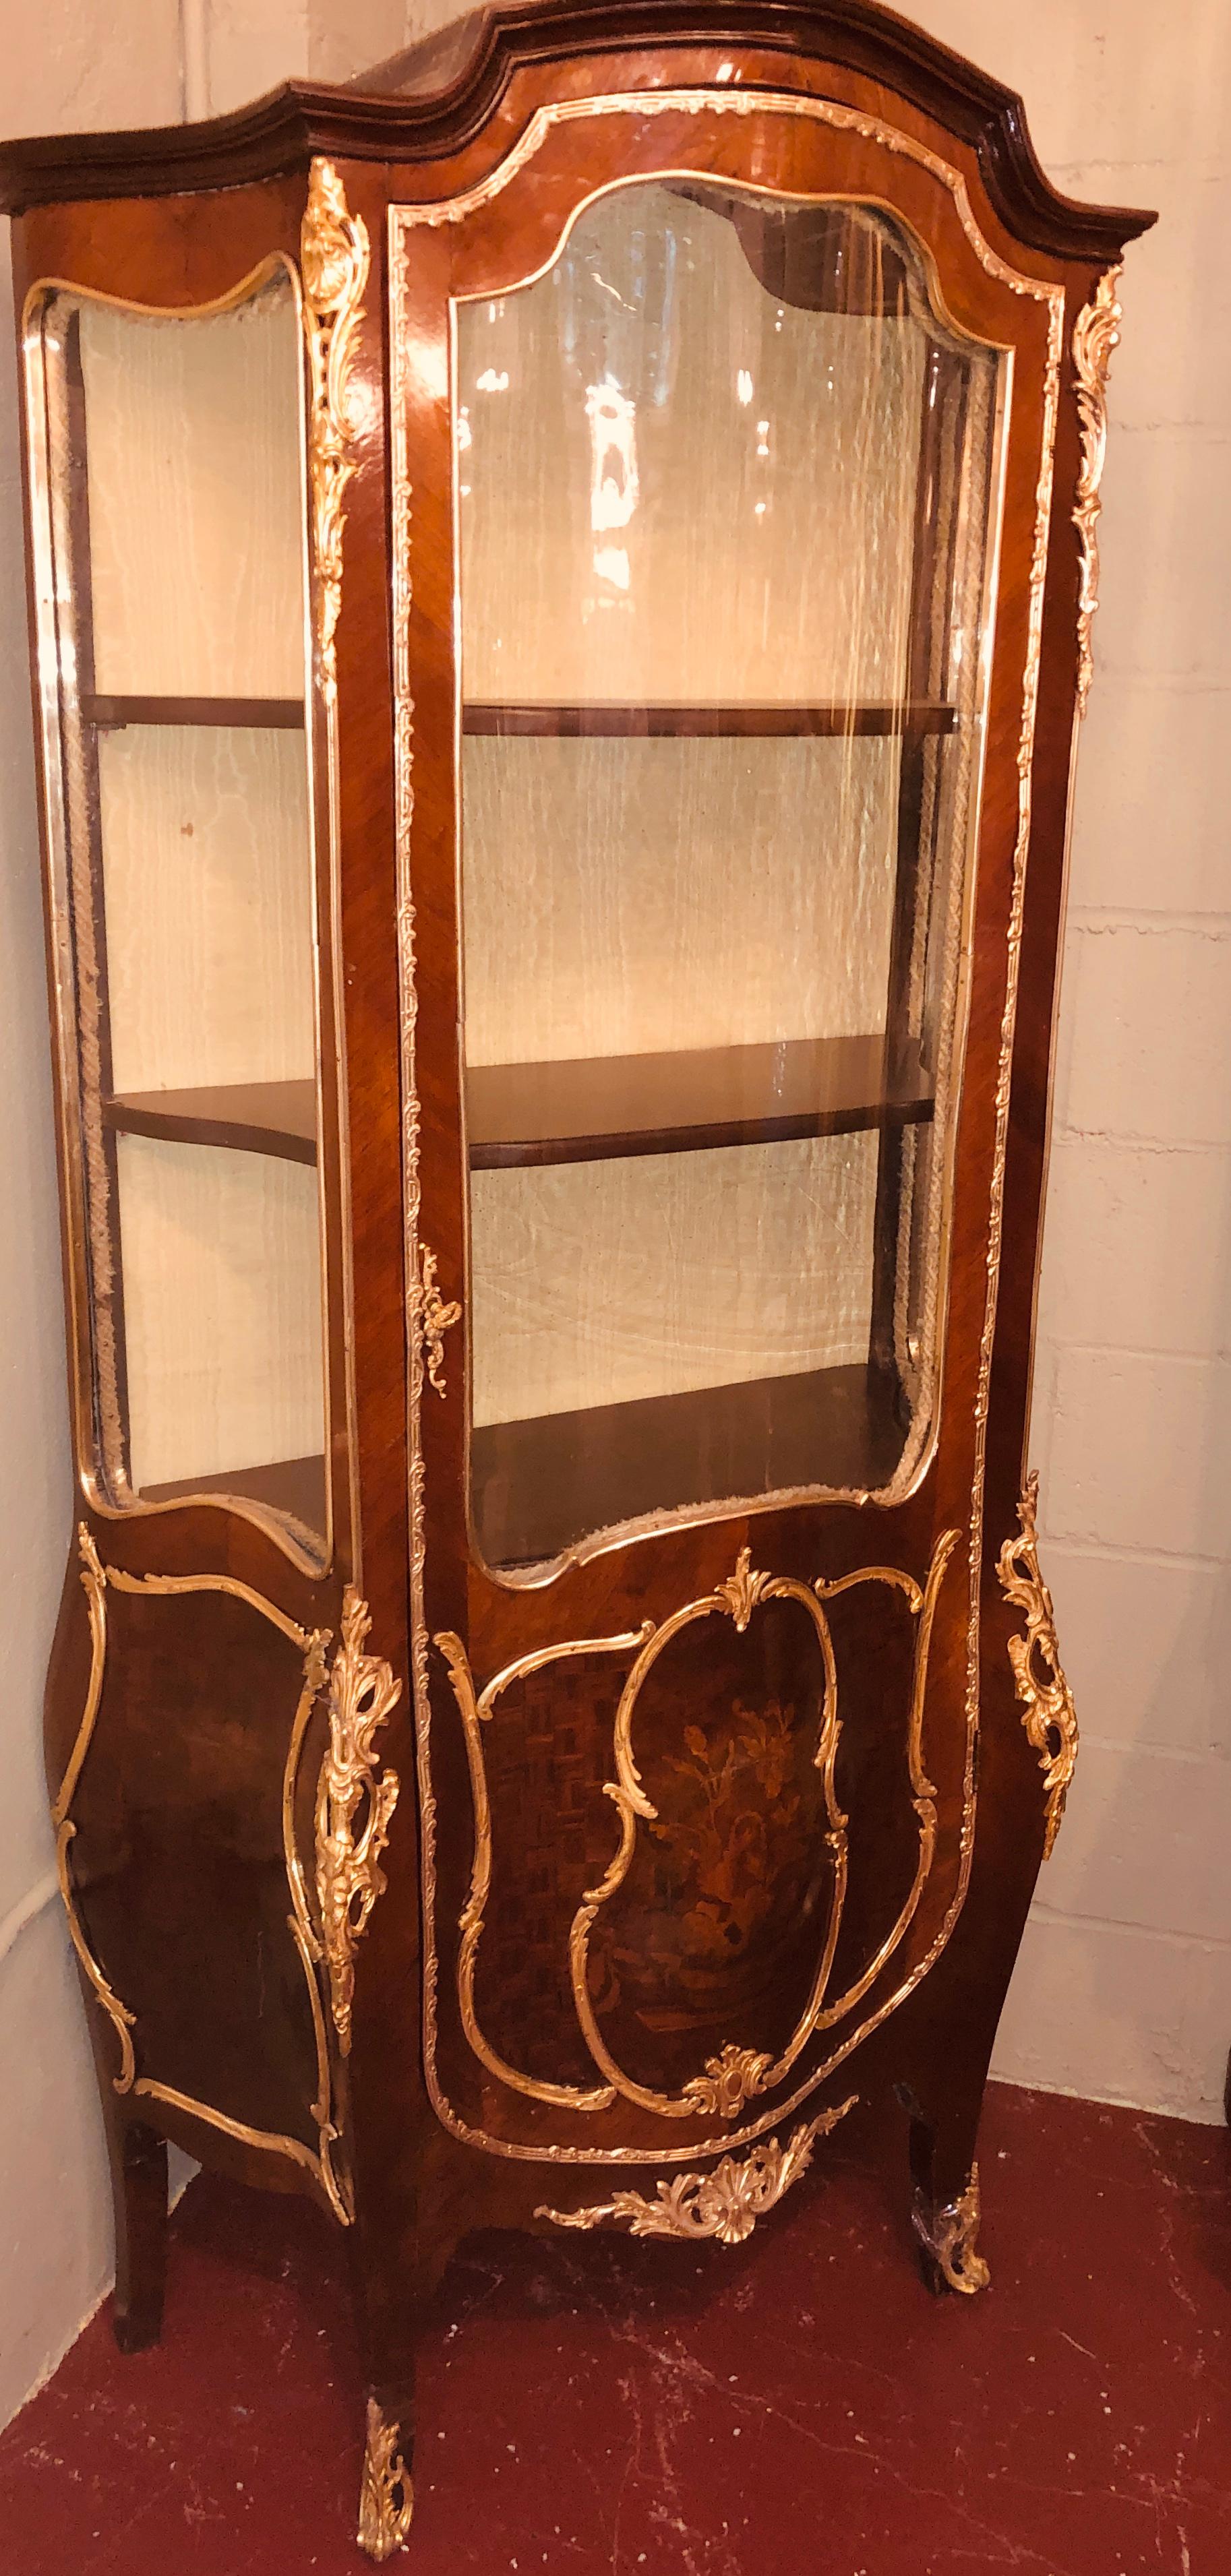 F. Cabinet de curiosités / Vitrines de style Louis XV, Linke, 19e-20e siècle. Ce curio en forme de bombe en parquet et marqueterie florale est tout simplement stupéfiant avec les plus belles montures en bronze d'après Francios Linke et certainement